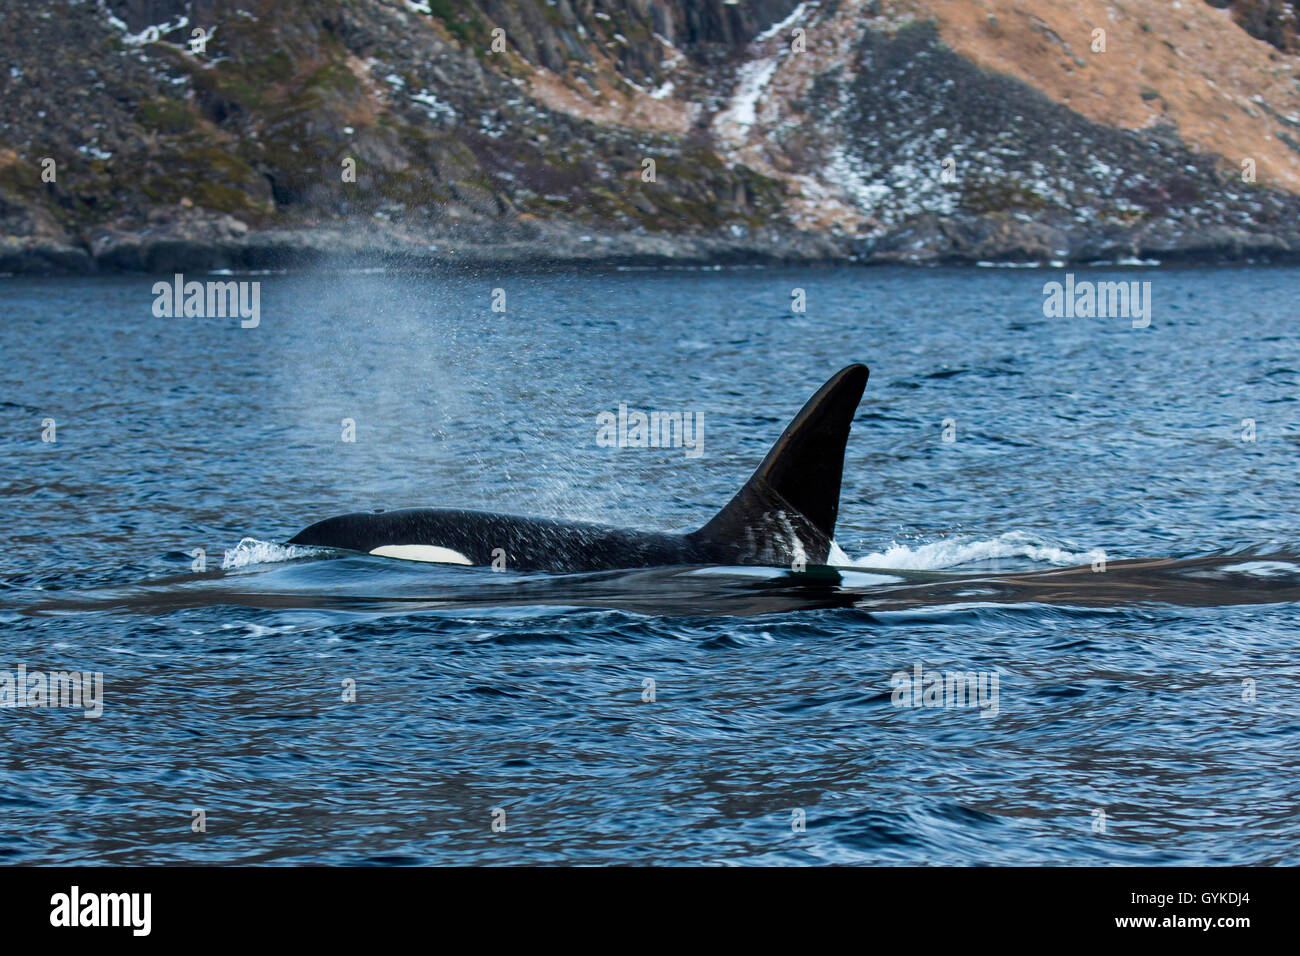 Orca, grand, de l'épaulard (Orcinus orca) grampus, exhalant grand mâle nageant dans la proximité de la plage, vue latérale, la Norvège, Troms, Senja Banque D'Images